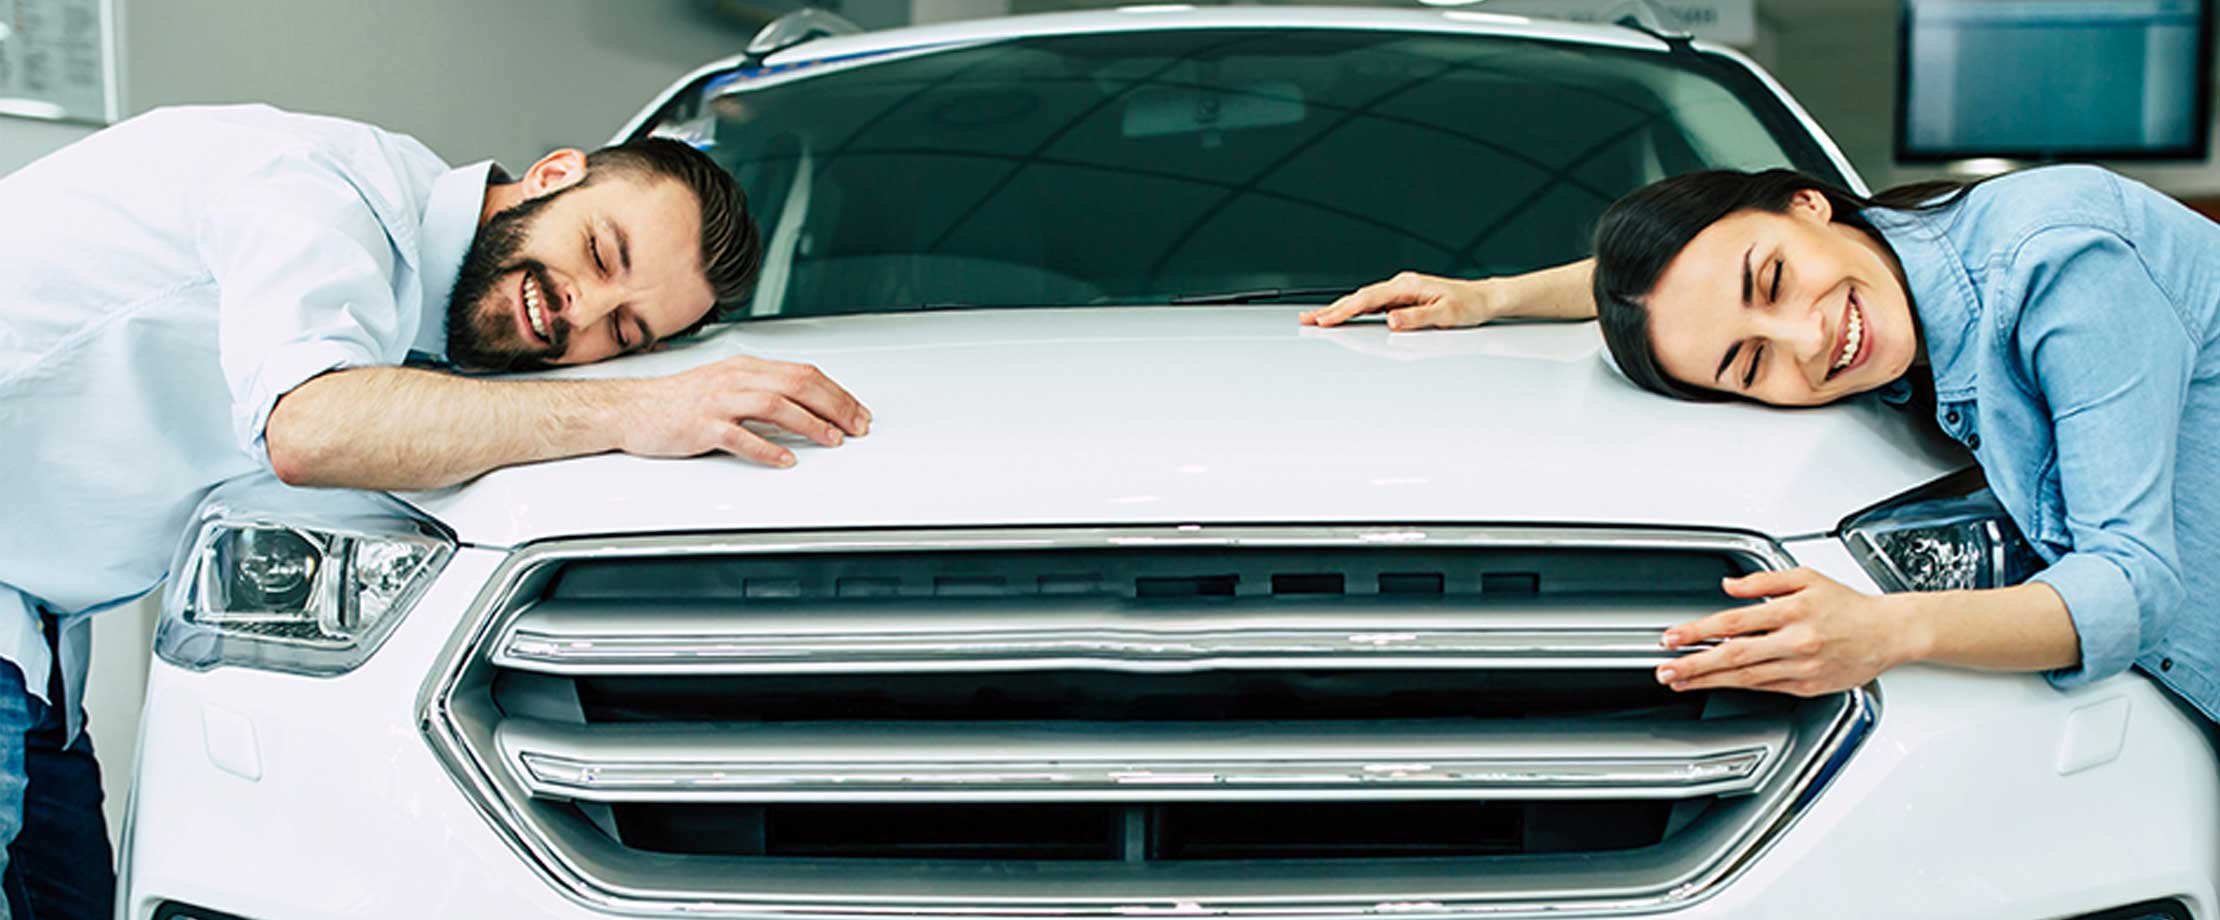 Ein junges paar liegt lächelnd auf der Motorhabe ihres neuen weißen Autos. Sie haben die Augen geschlossen. 